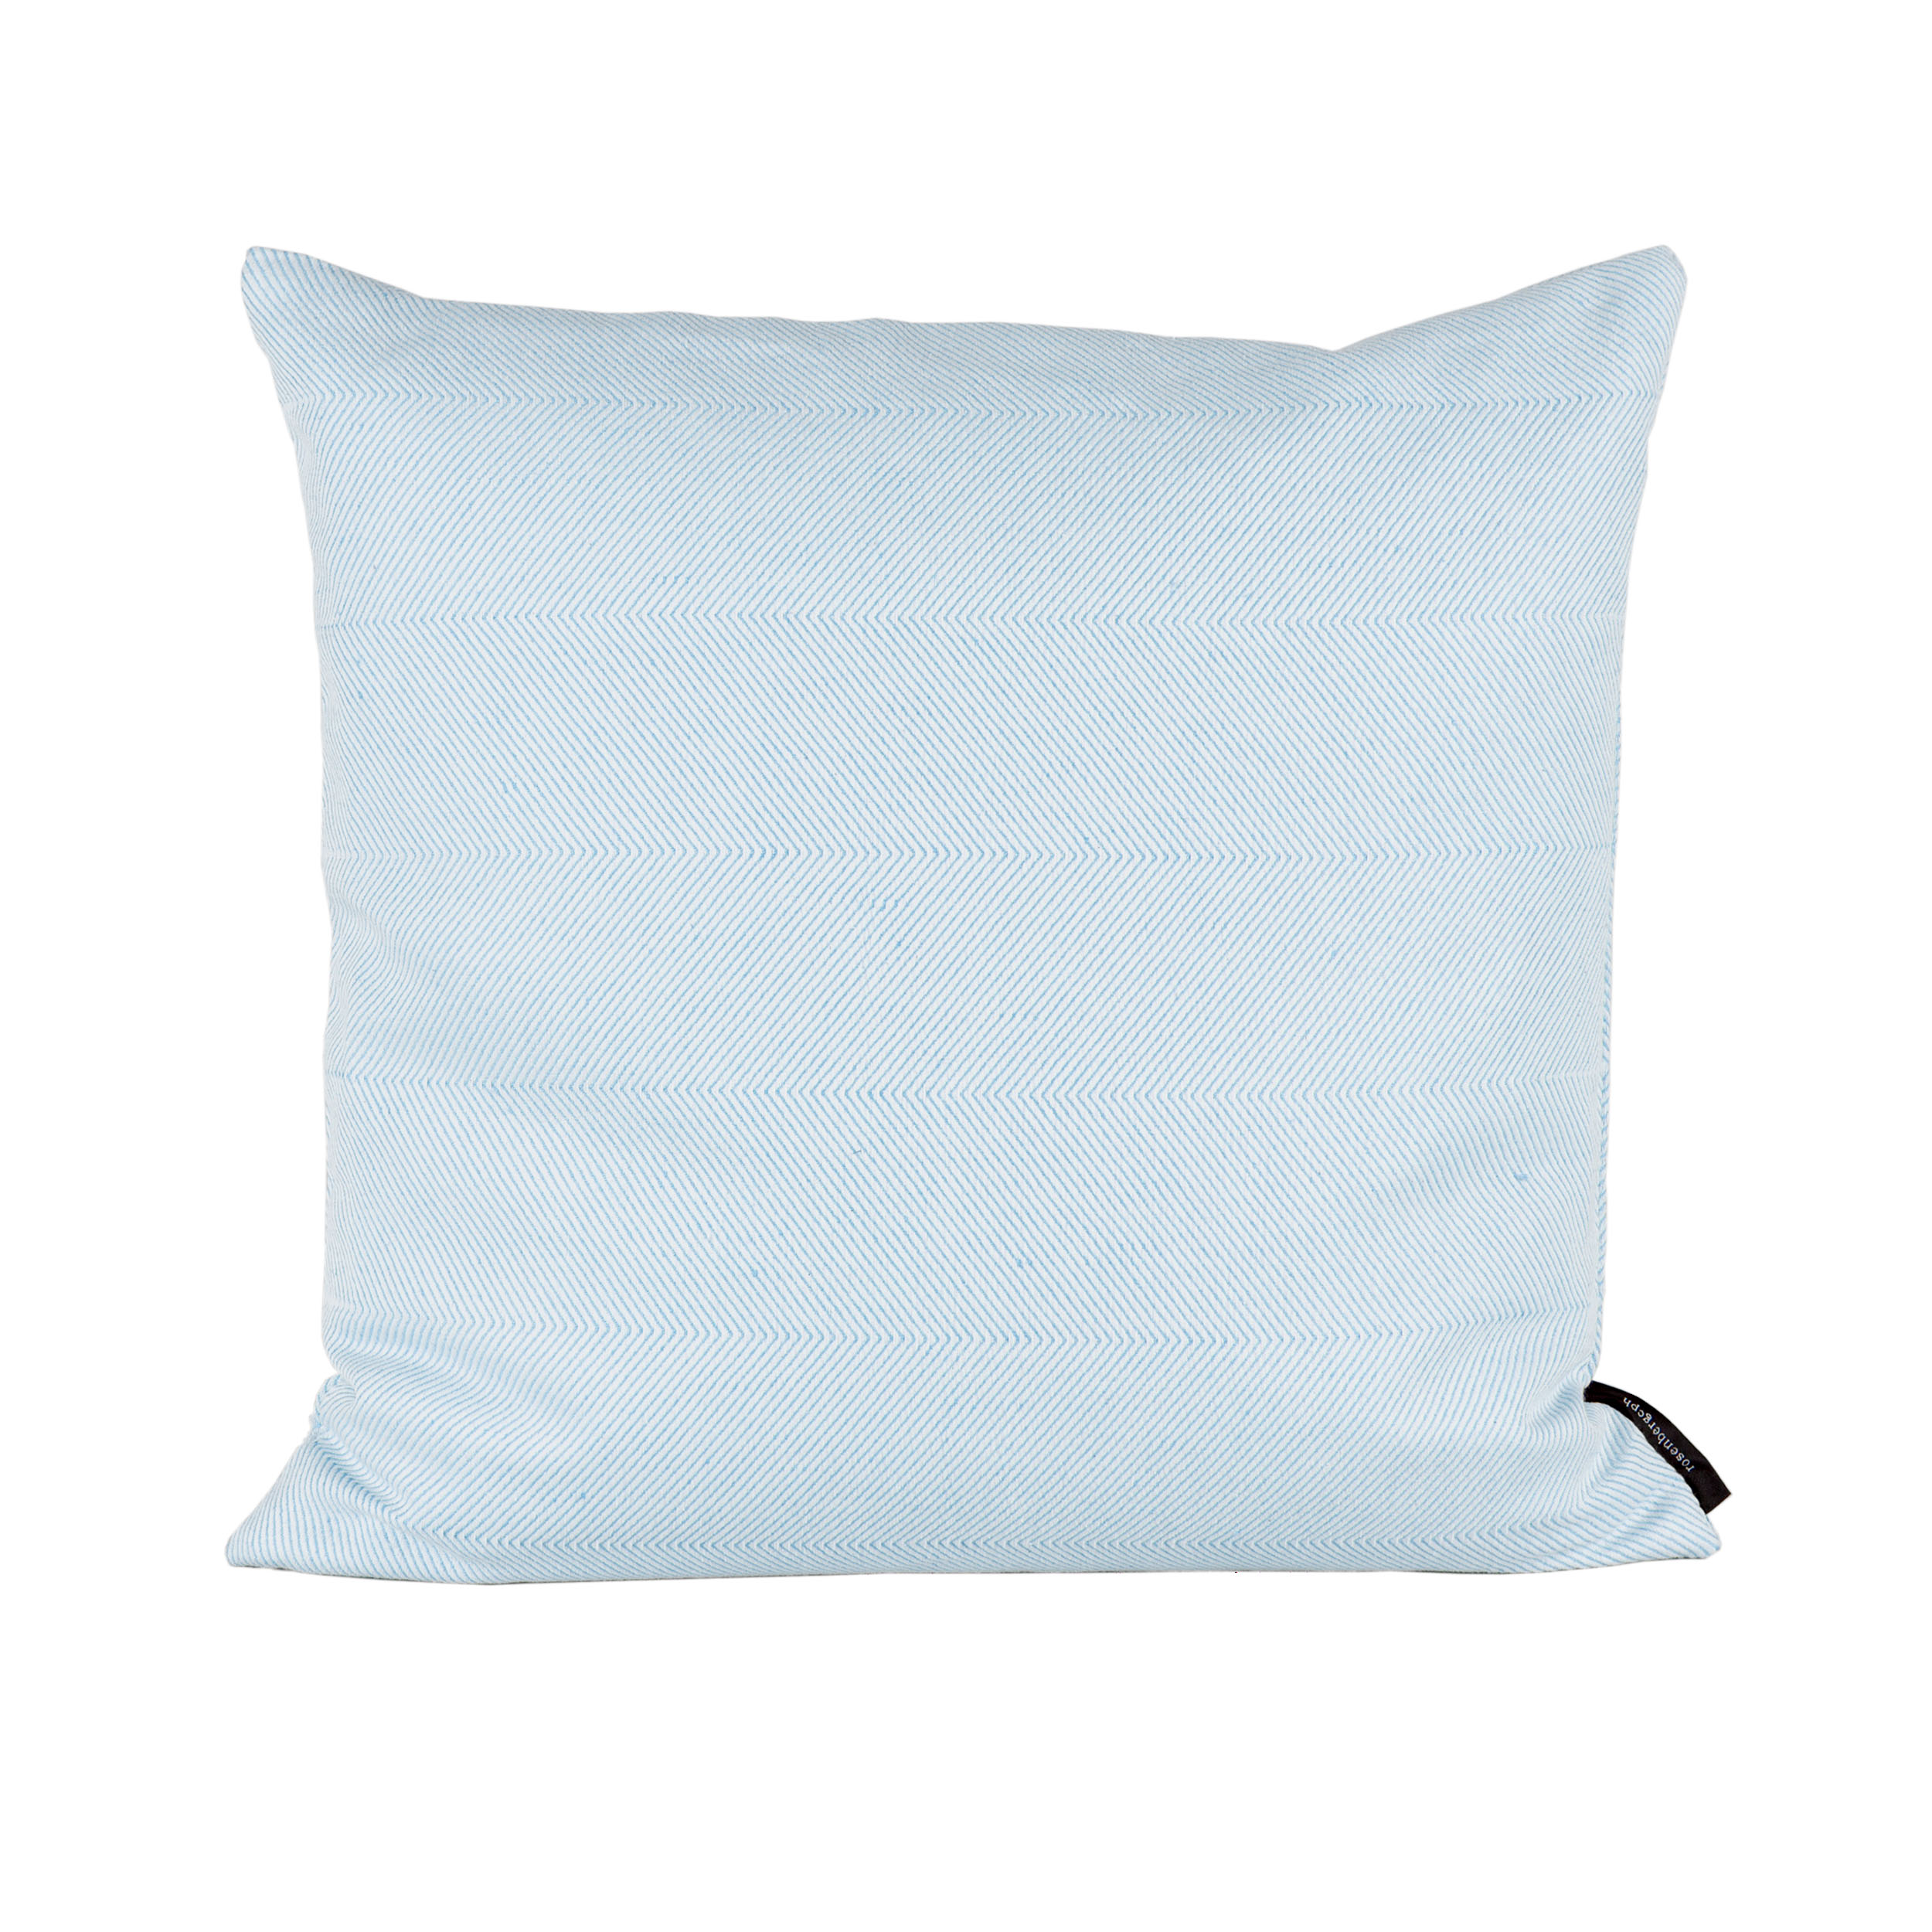 Square cushion linen/cotton Light Sky Blue, design by Anne Rosenberg, RosenbergCph